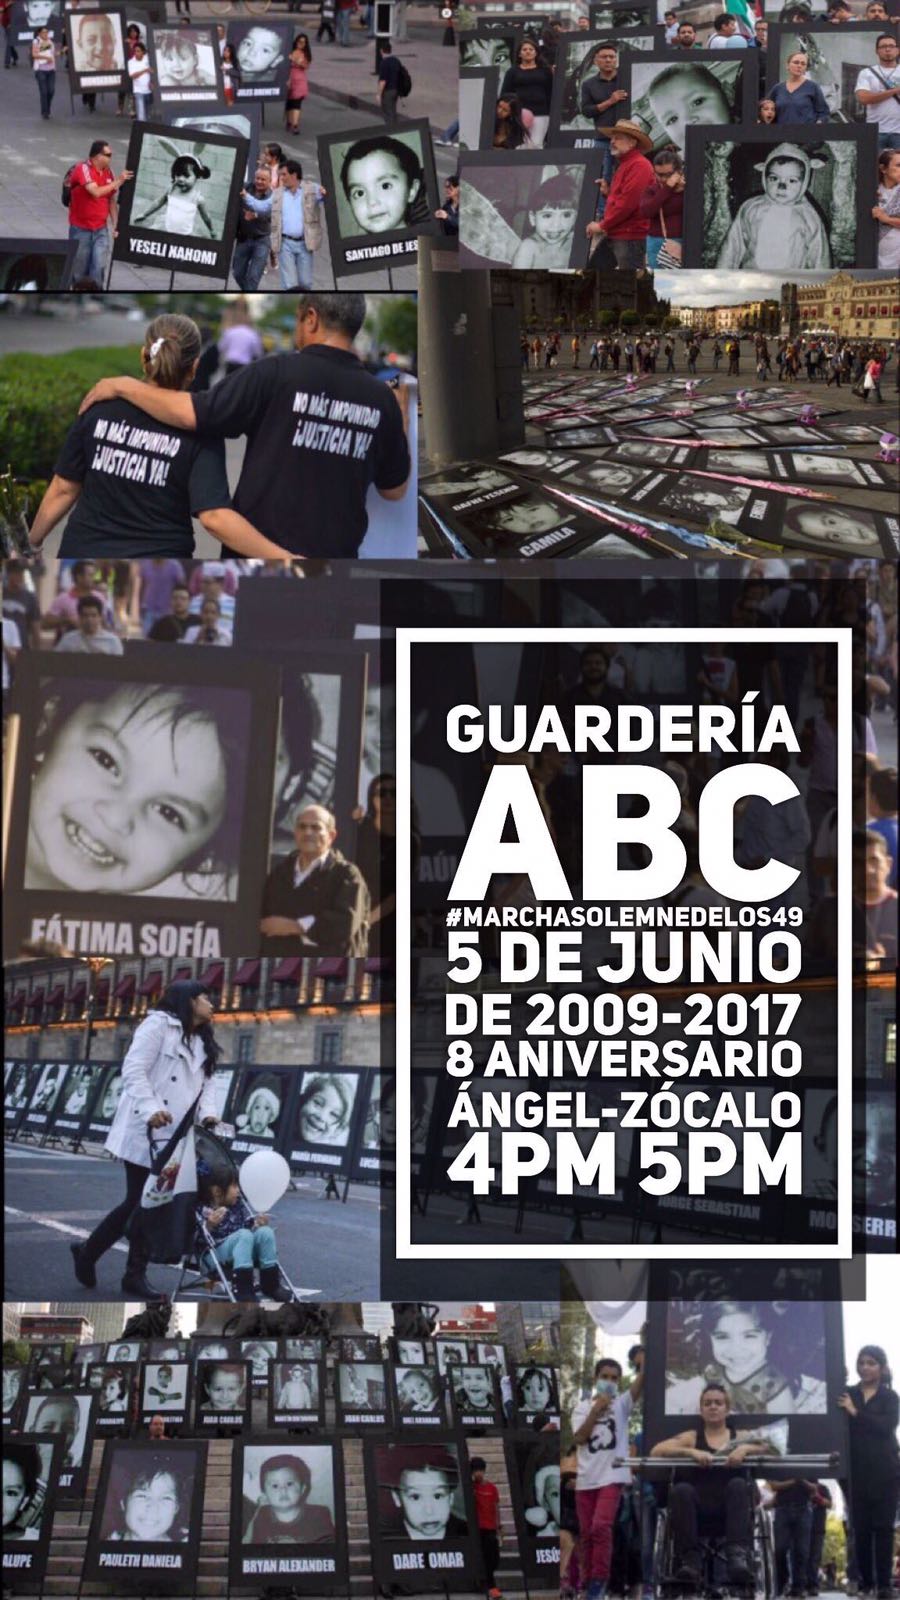 Marcha solemne por el 8 aniversario de la Guardería ABC